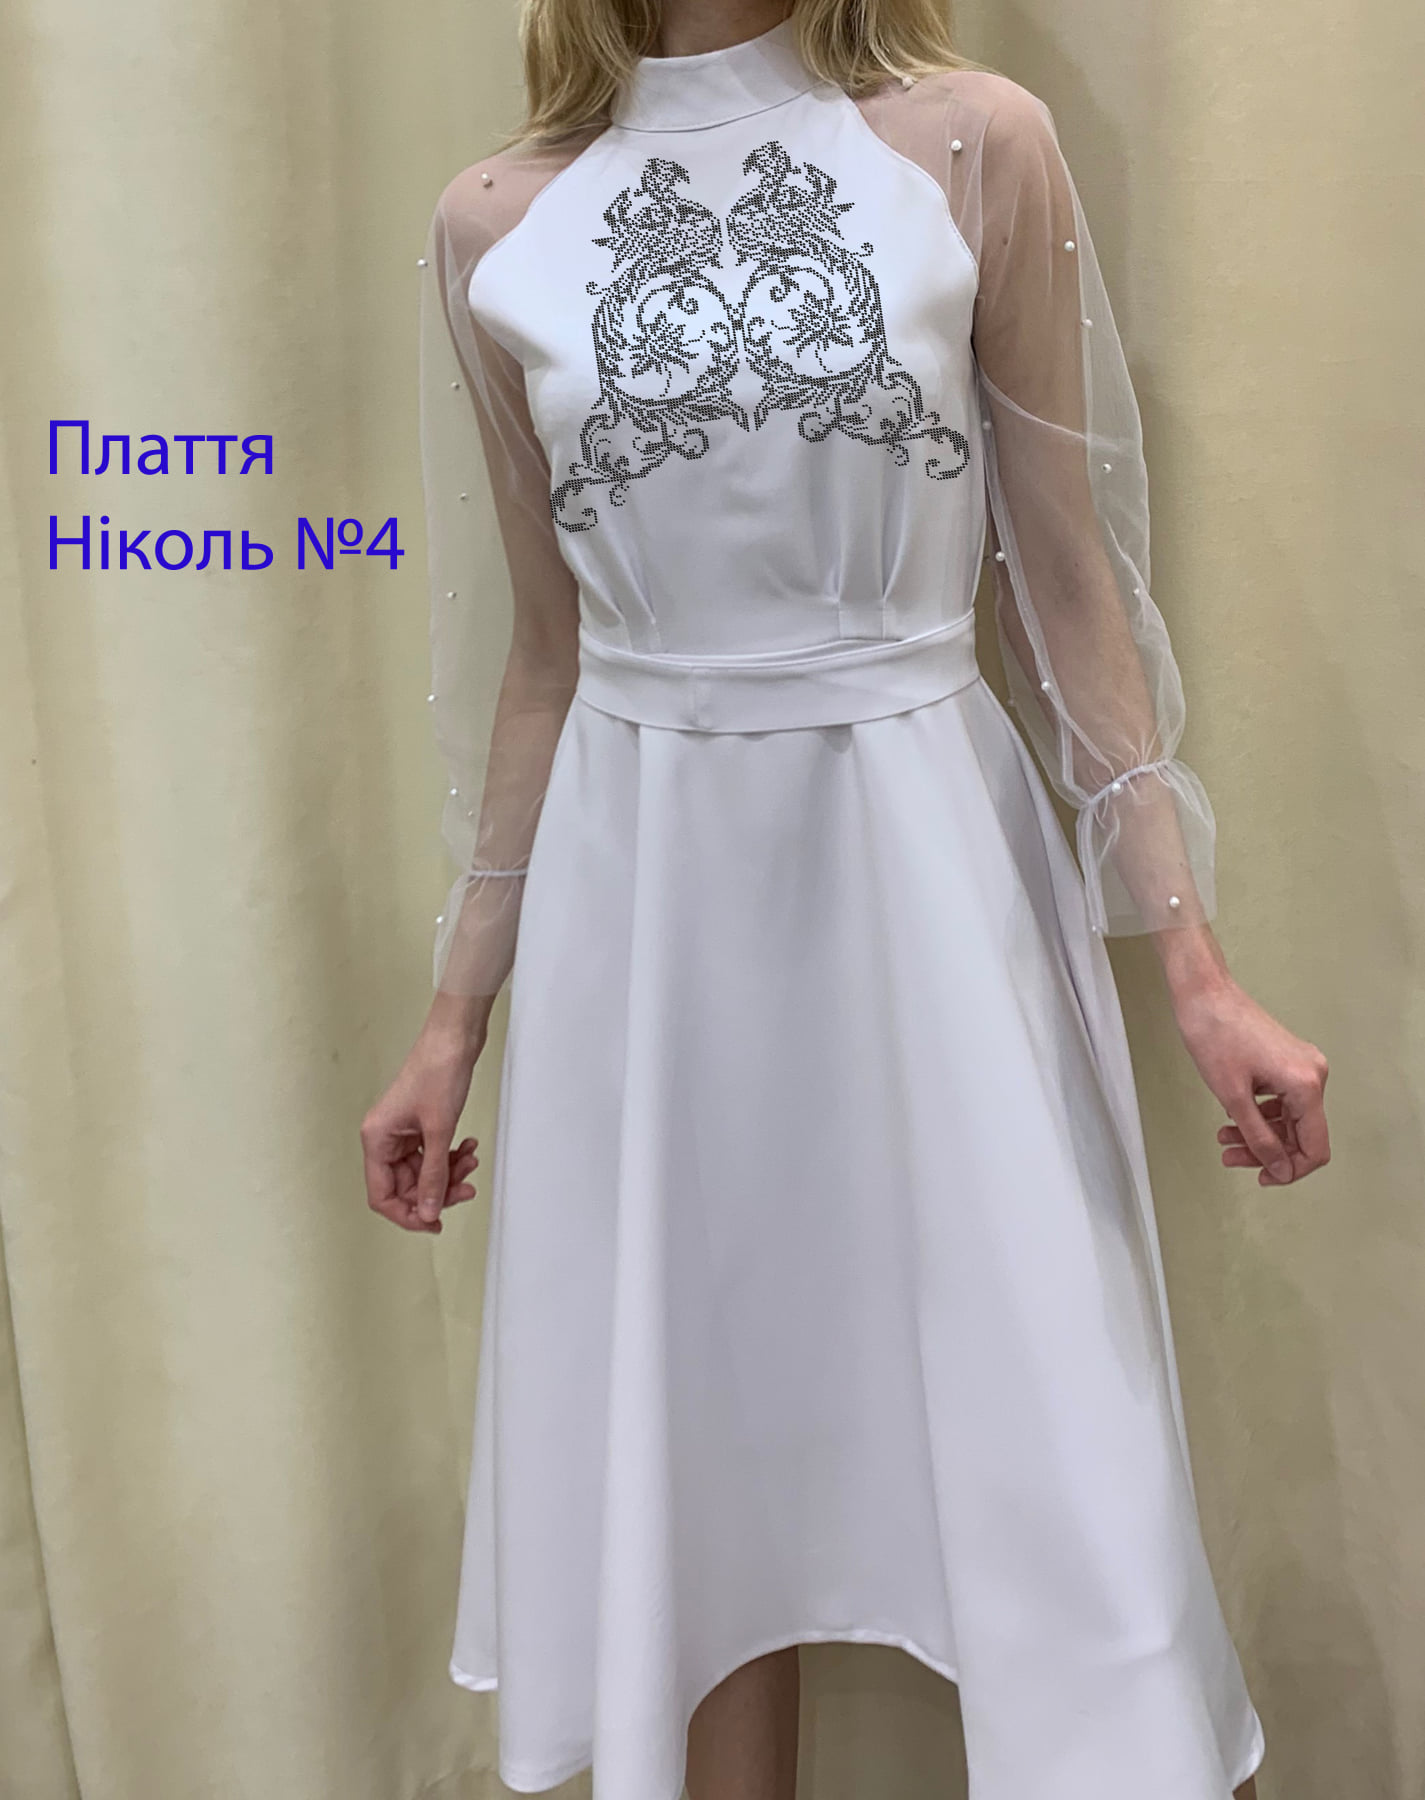 Пошита жіноча сукня для вишивки Ніколь №4